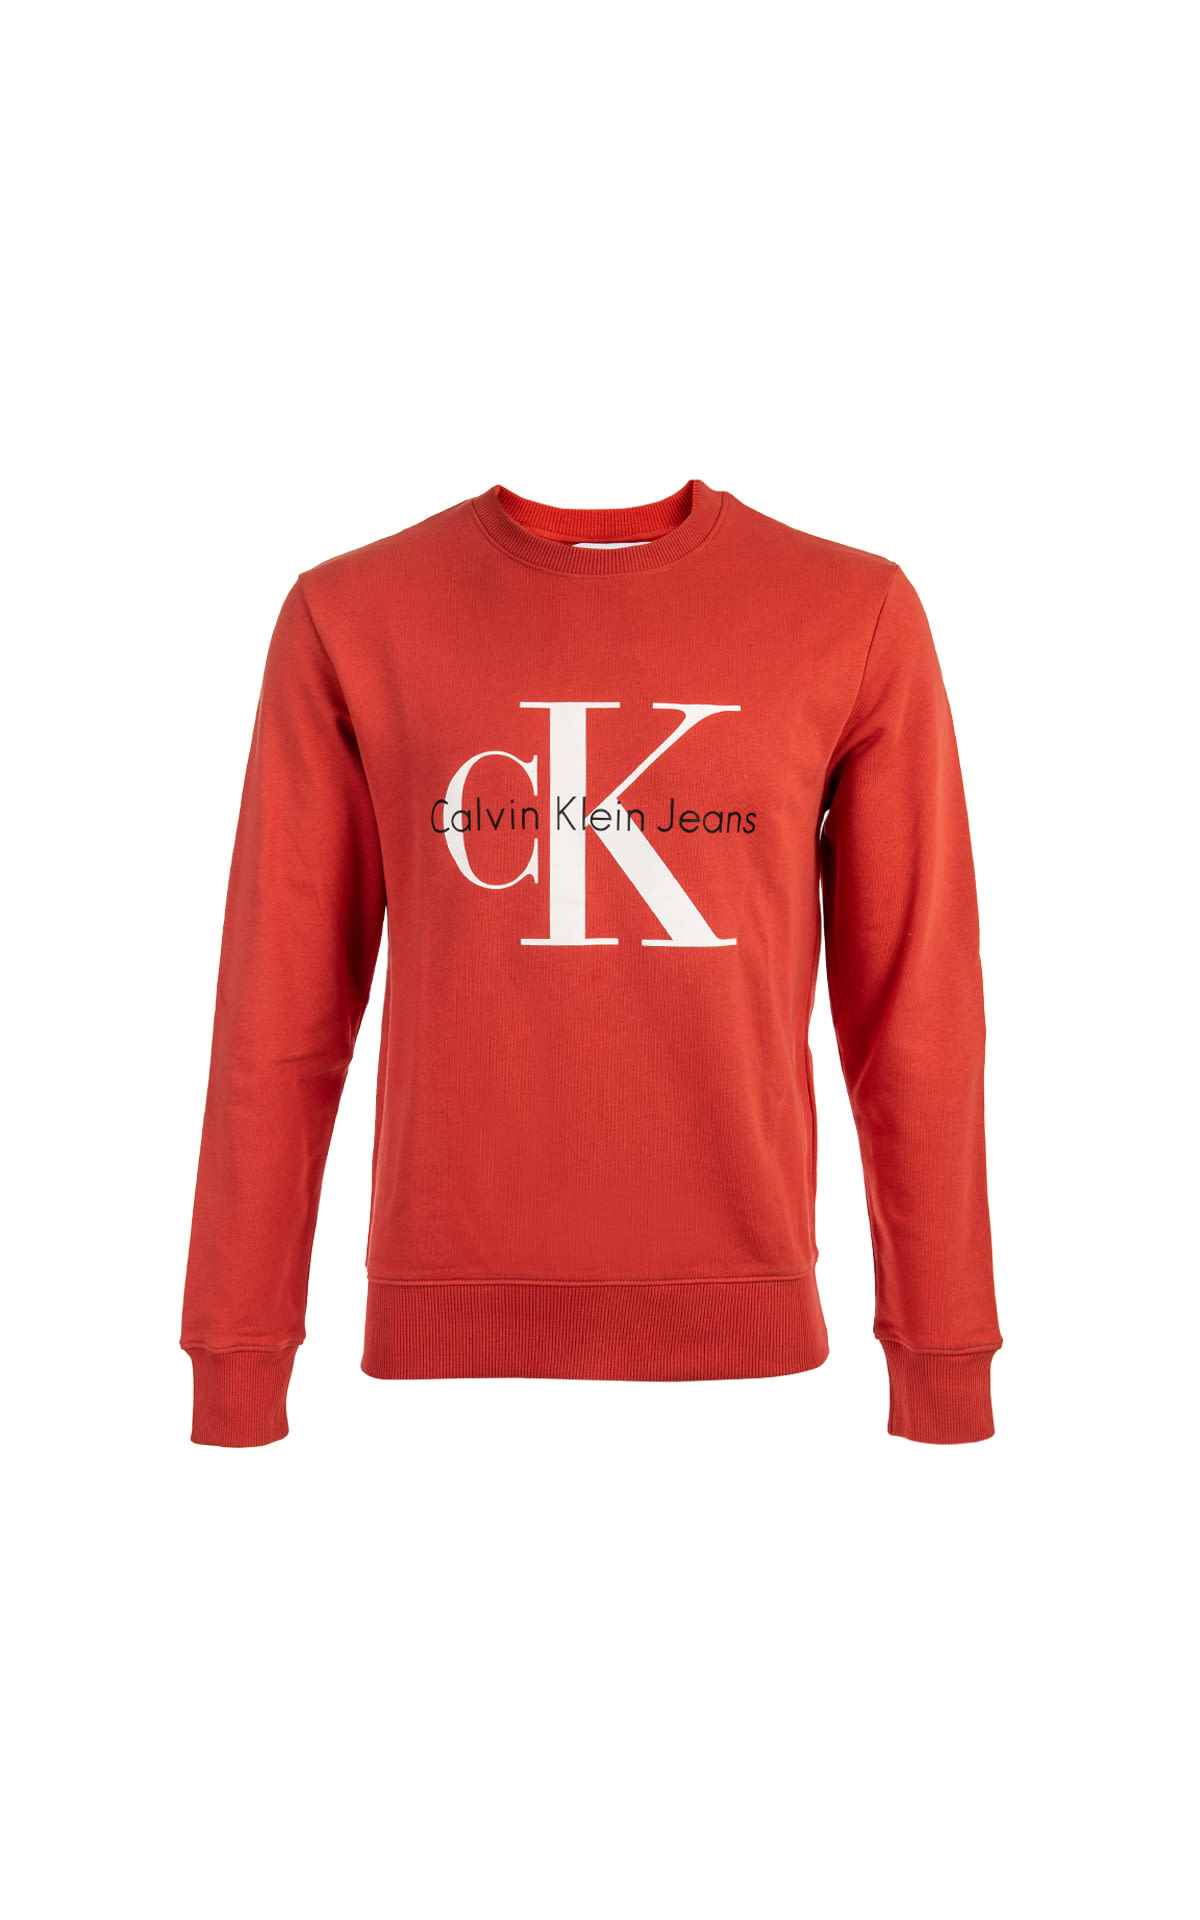 Sweatshirt with logo Calvin Klein